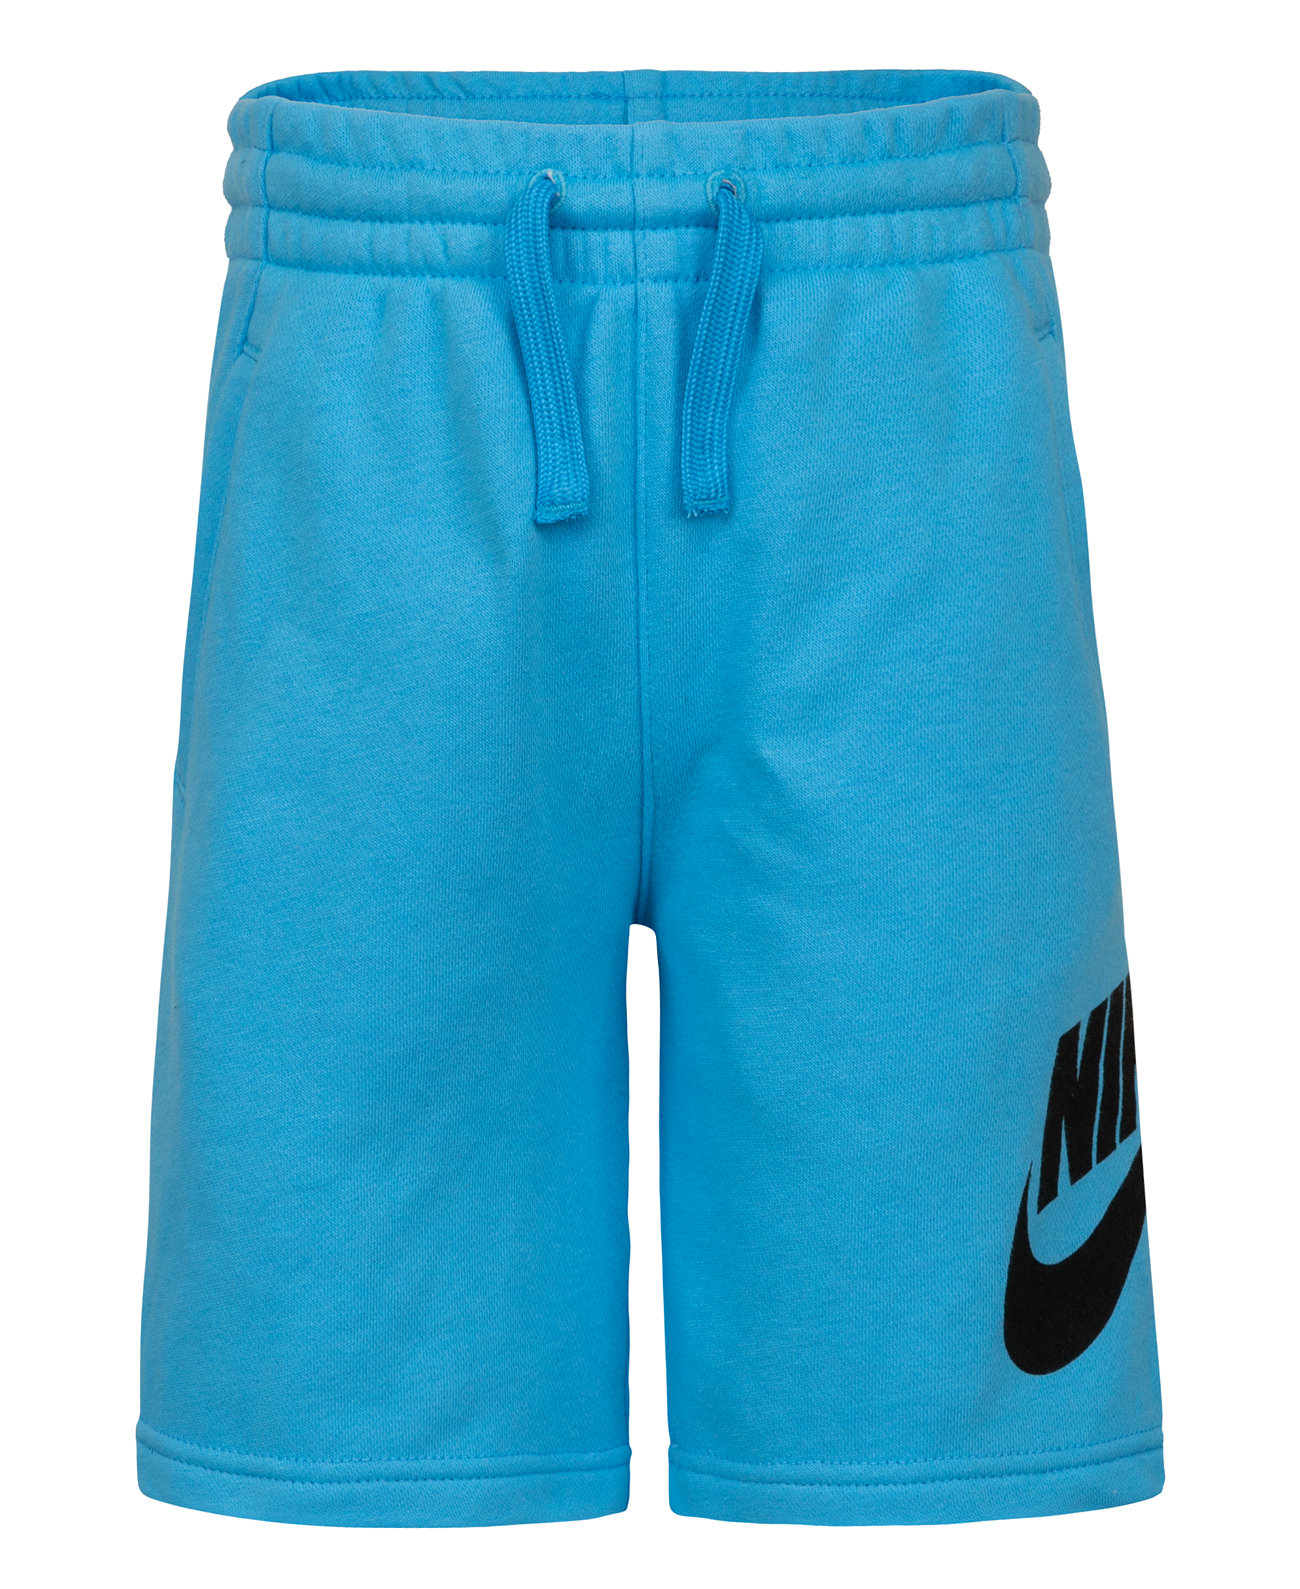 Спортивные шорты для мальчиков Little Boys Club Shorts Nike